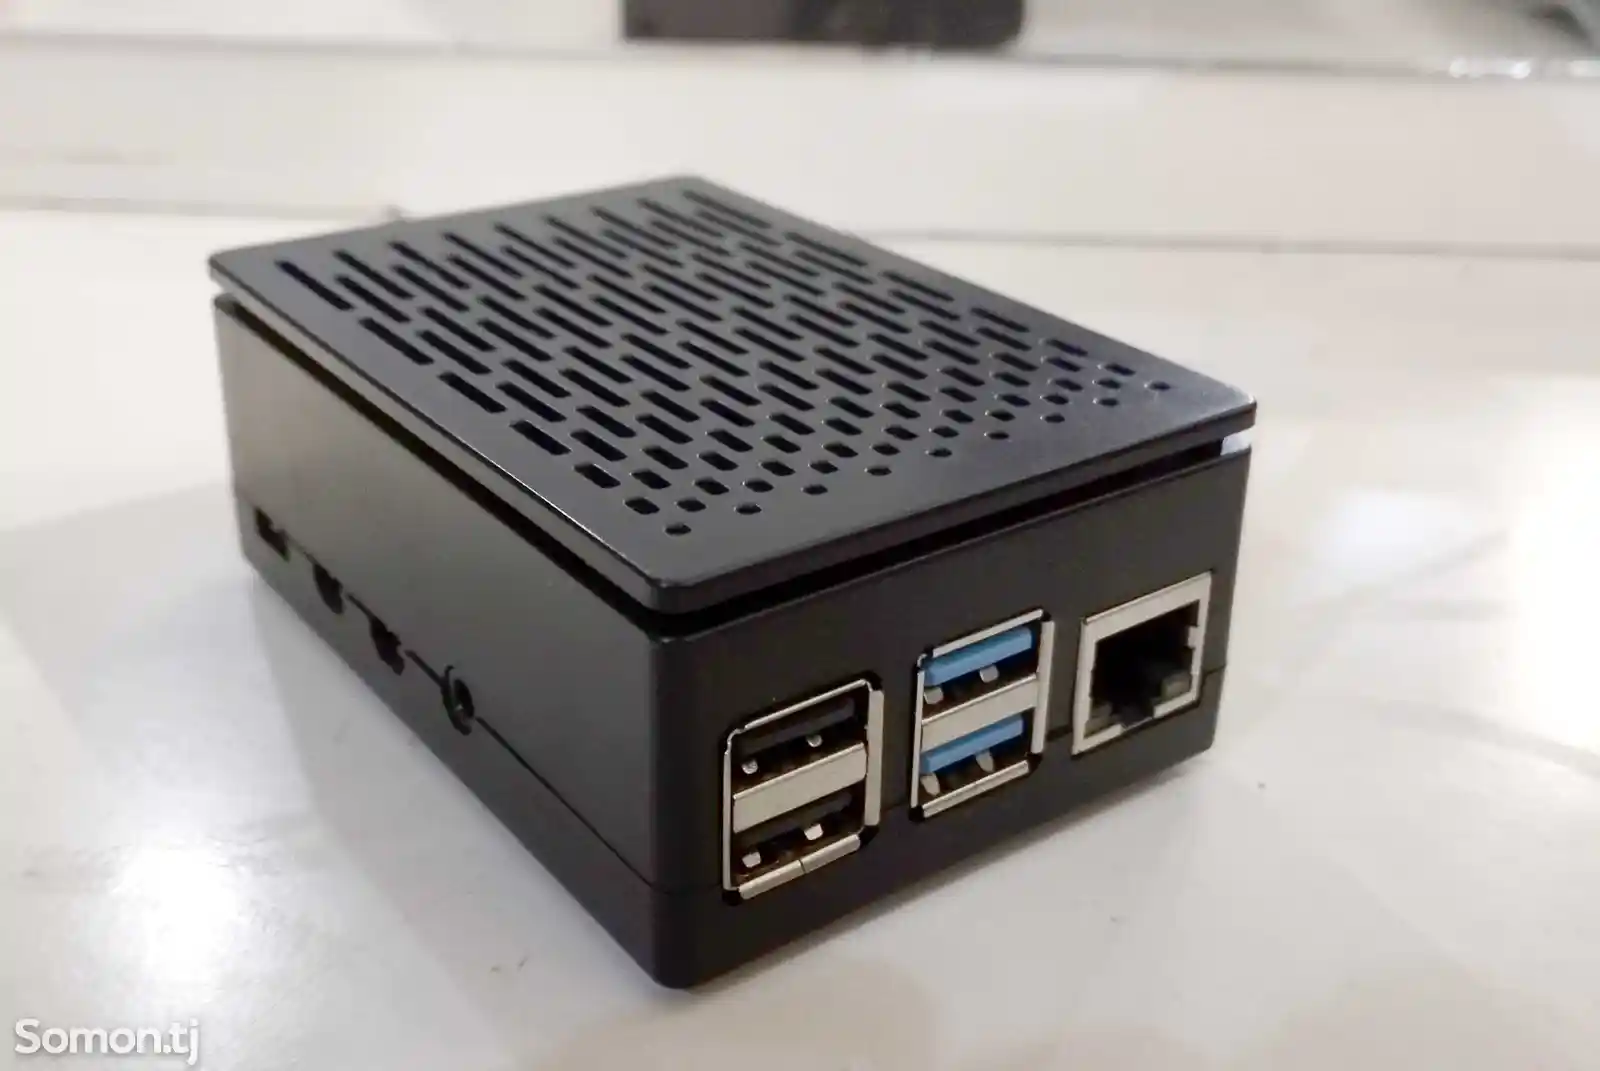 Сервер для умного дома raspberry pi 4 model b-1